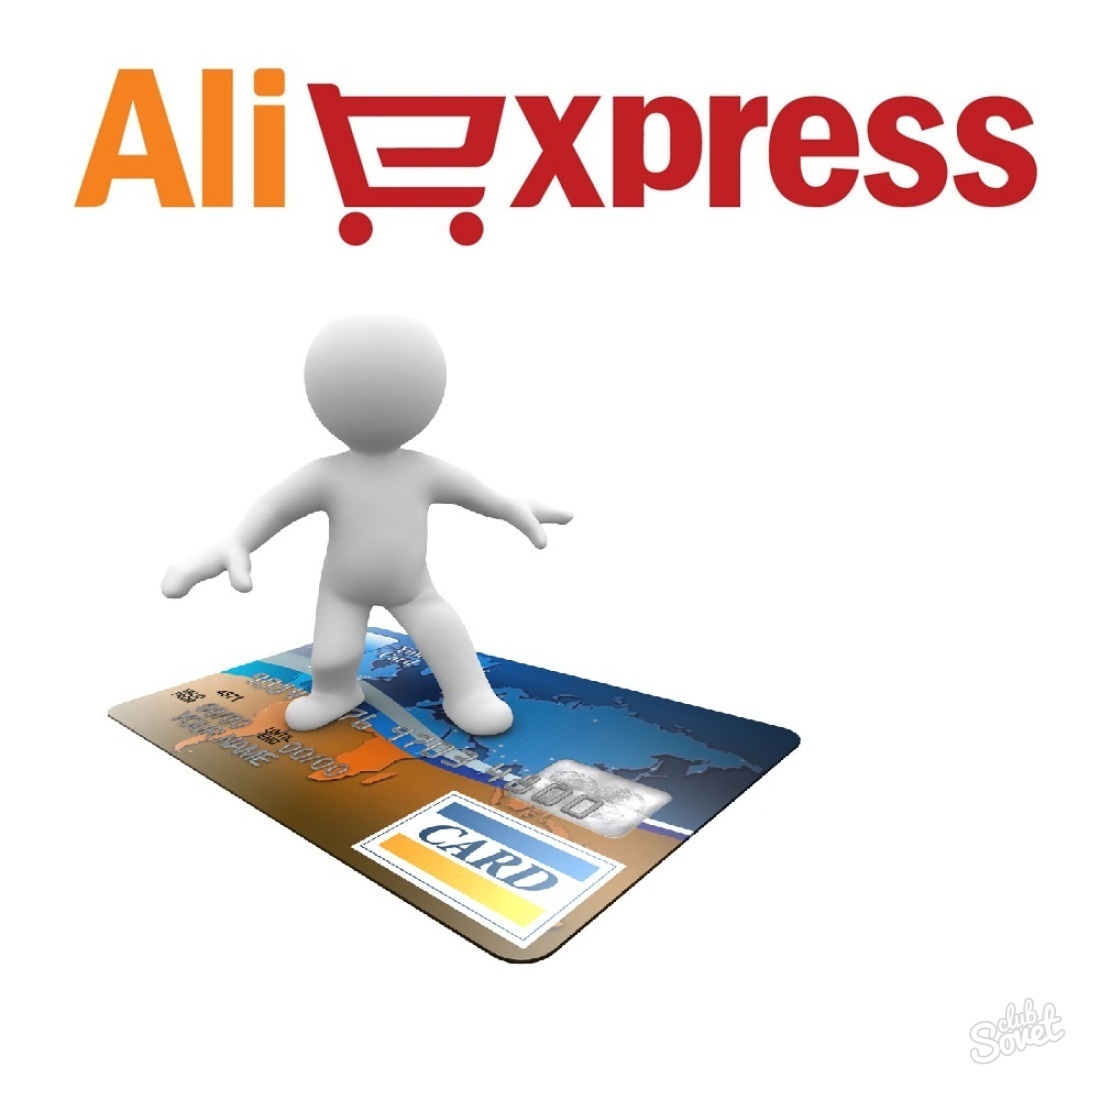 Aliexpress için ödeme yöntemleri